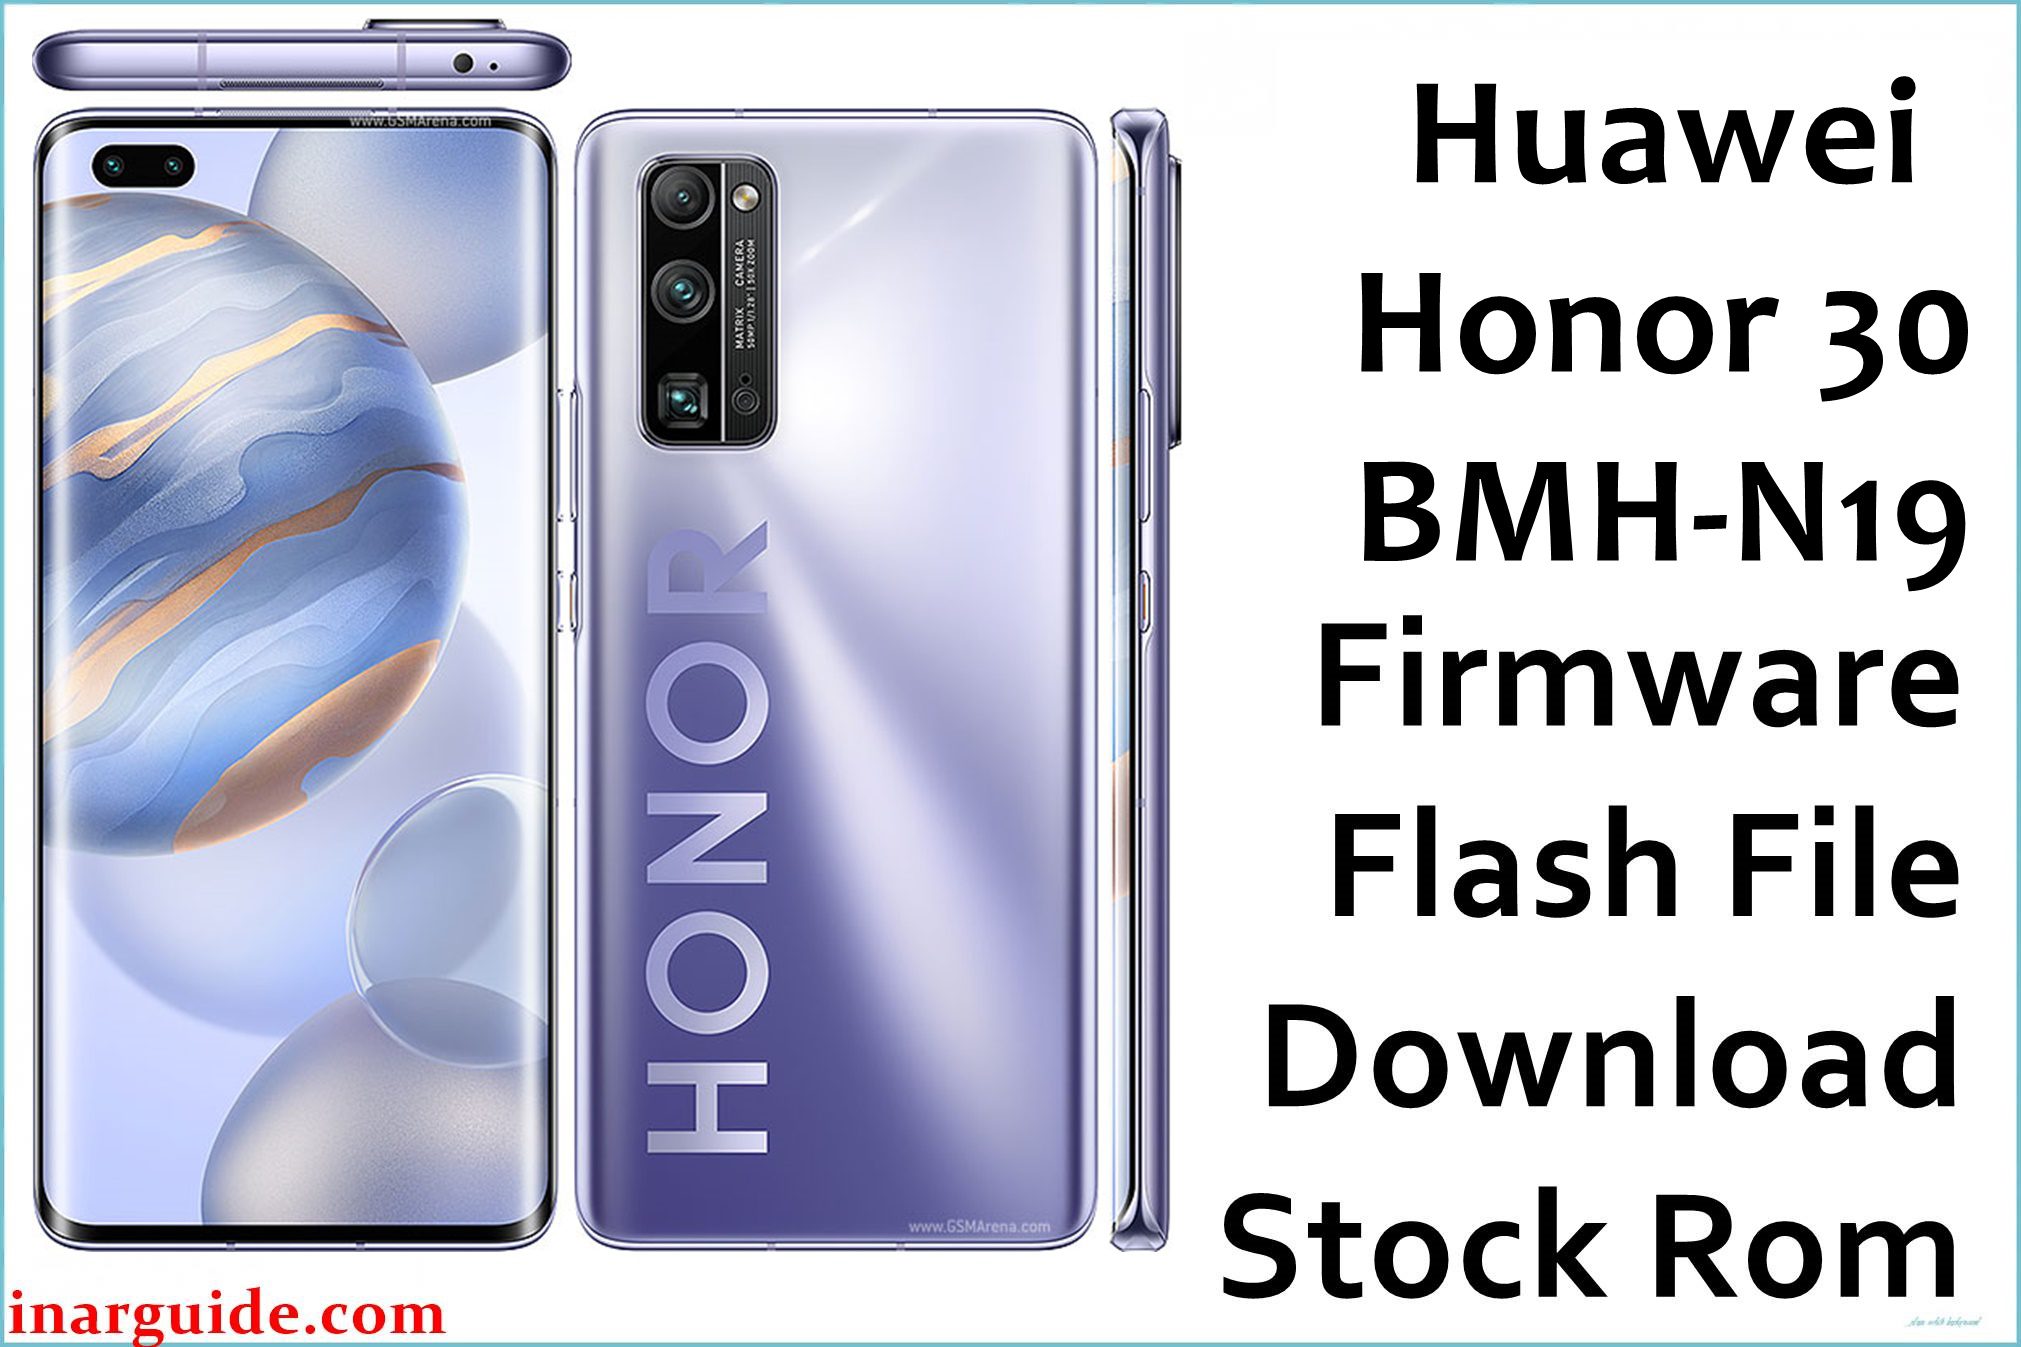 Huawei Honor 30 BMH N19